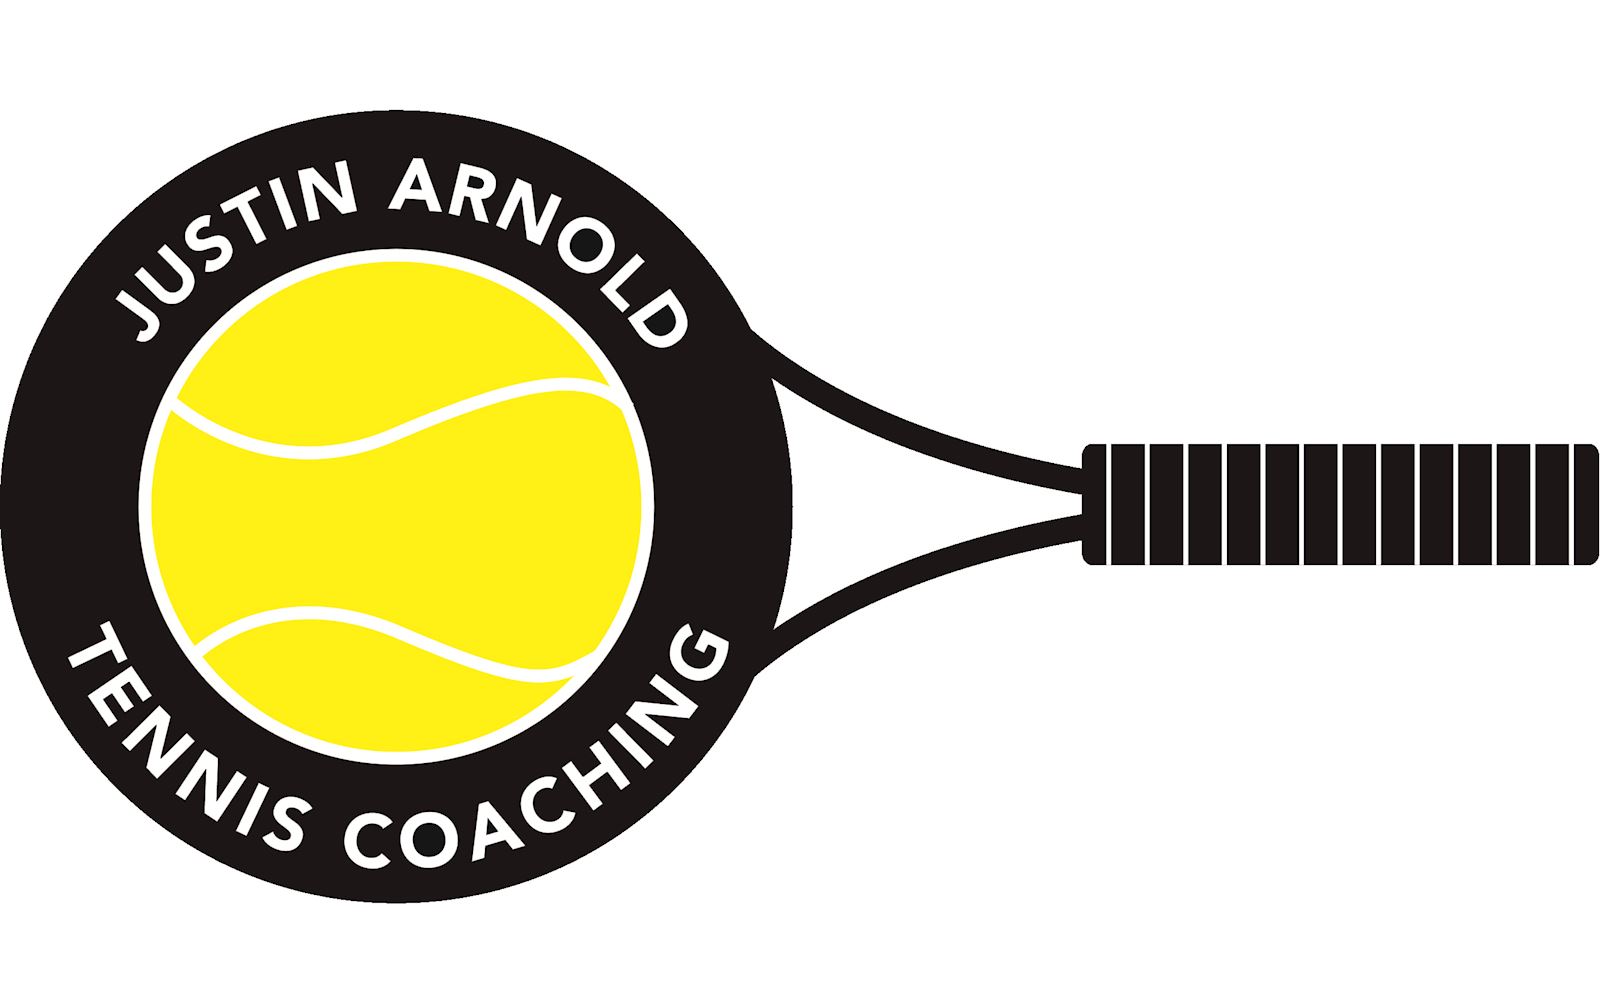 Justin Arnold Tennis Coaching